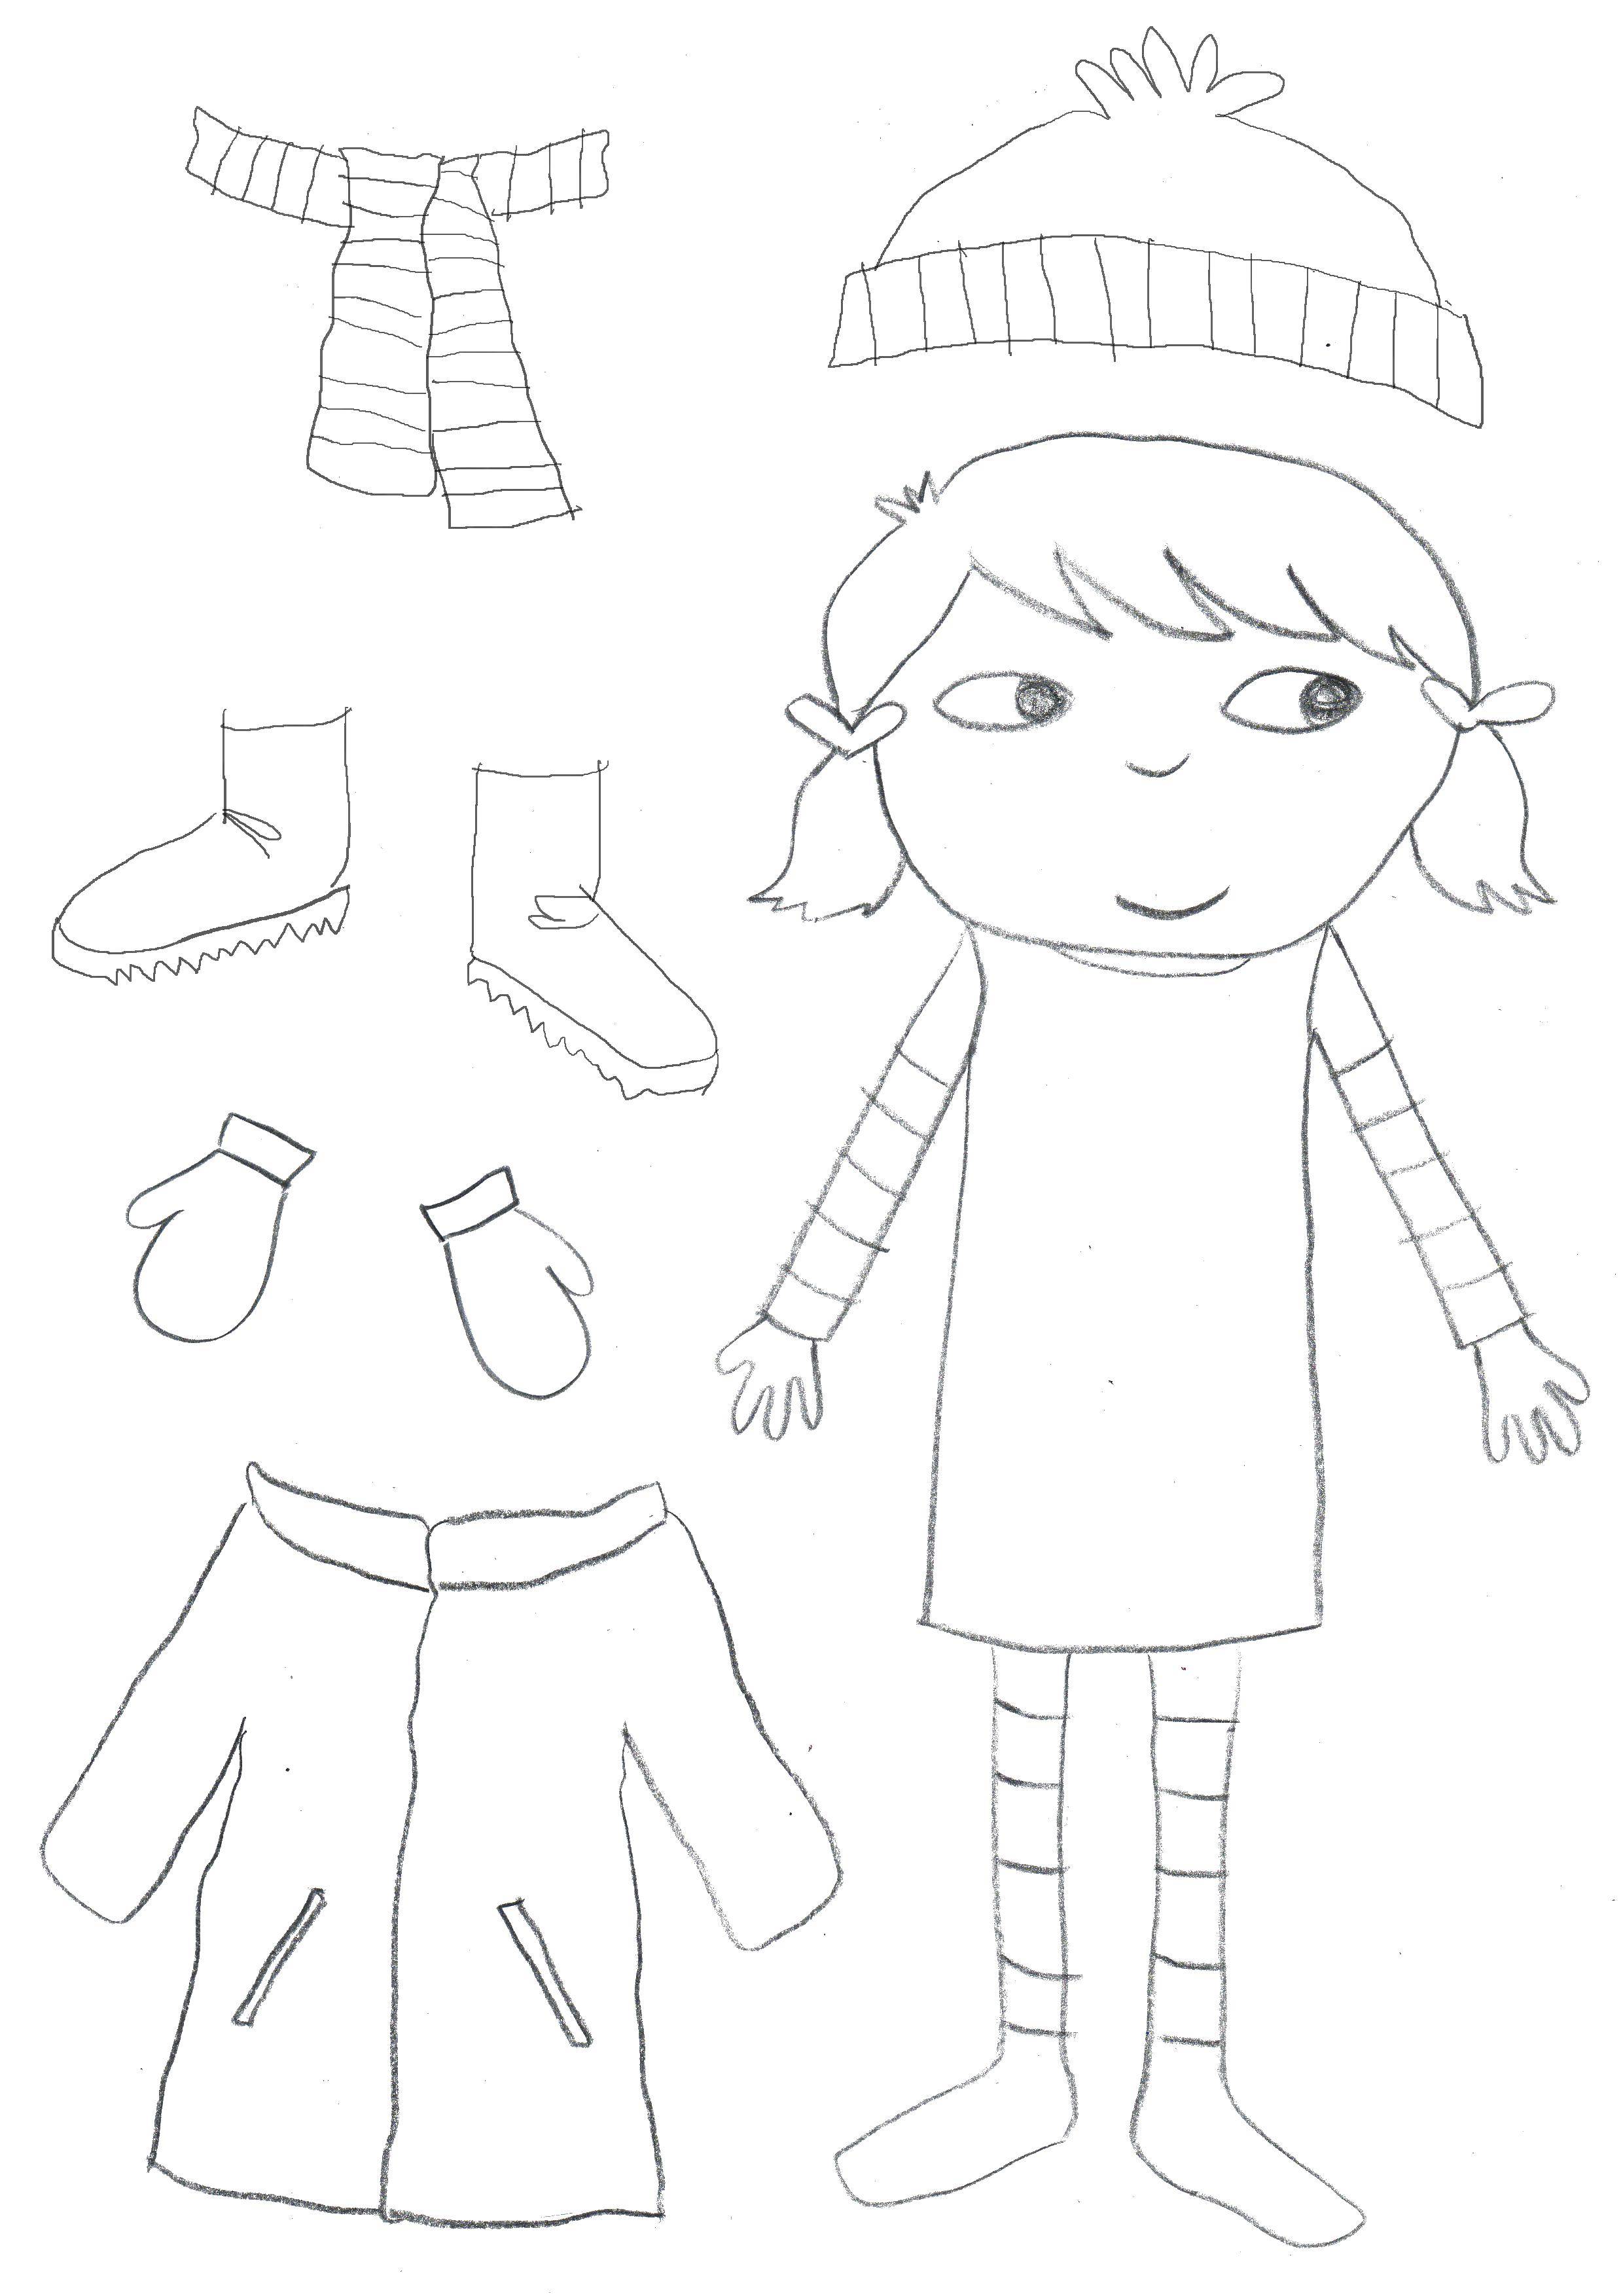 Название: Раскраска Девочка, шарфик, шапка, угги, варежки, куртка. Категория: одежда. Теги: Девочка, шарфик, шапка, угги, варежки, куртка.